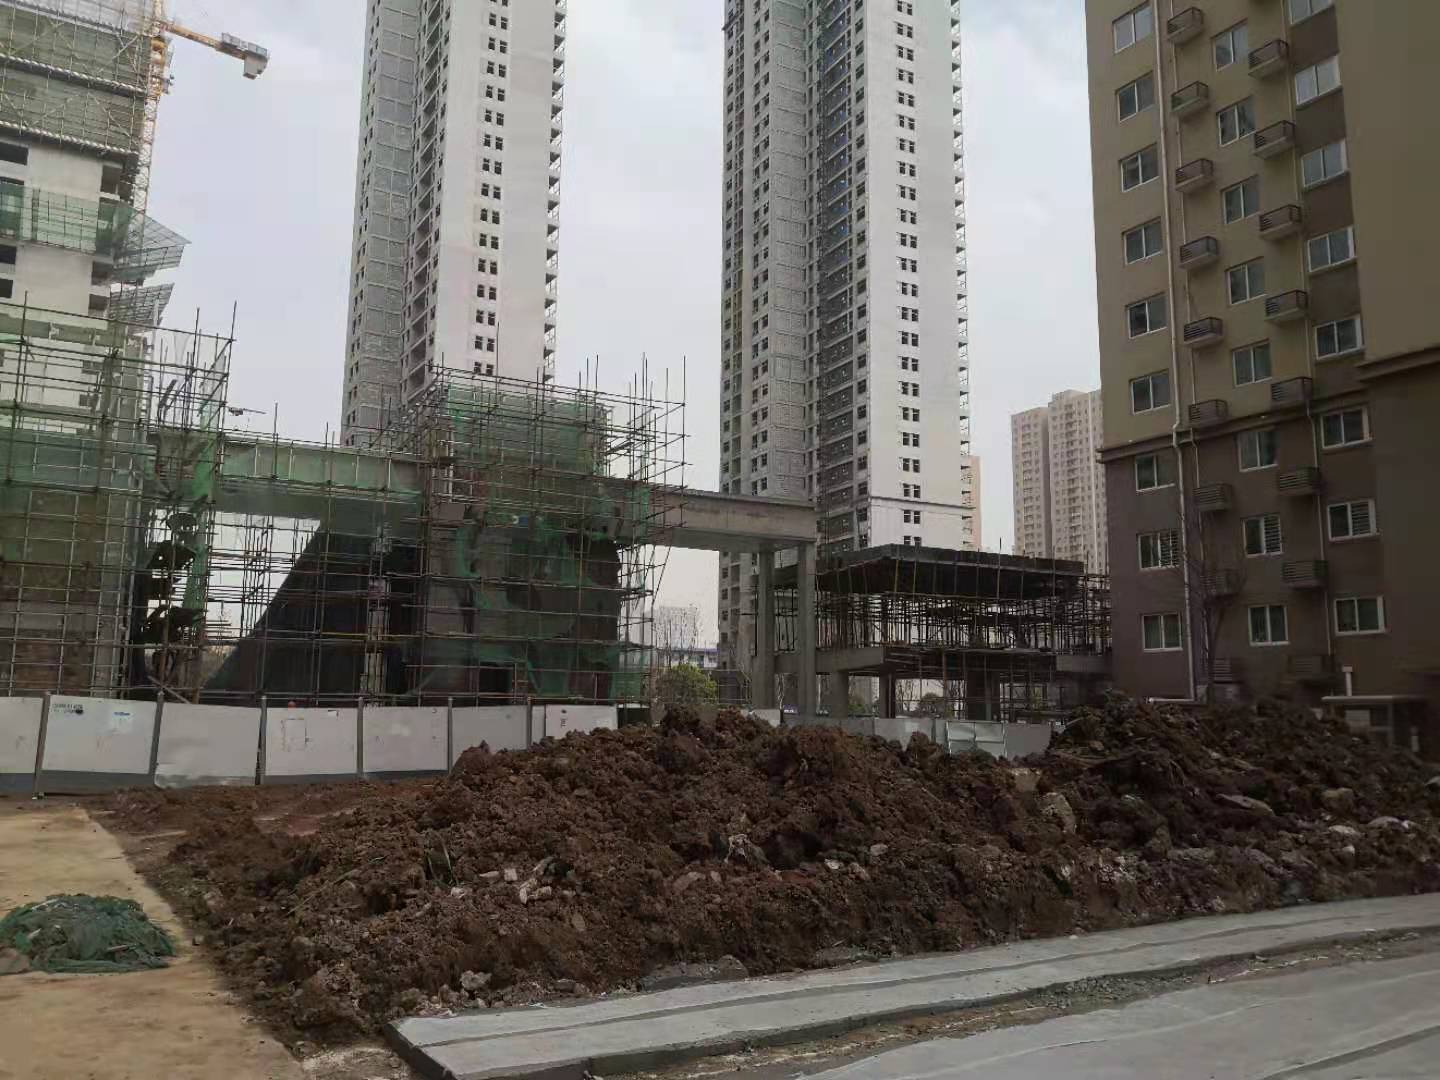 西安聚福苑小区临街商铺未通过审批仍施工 业主担心安全受影响